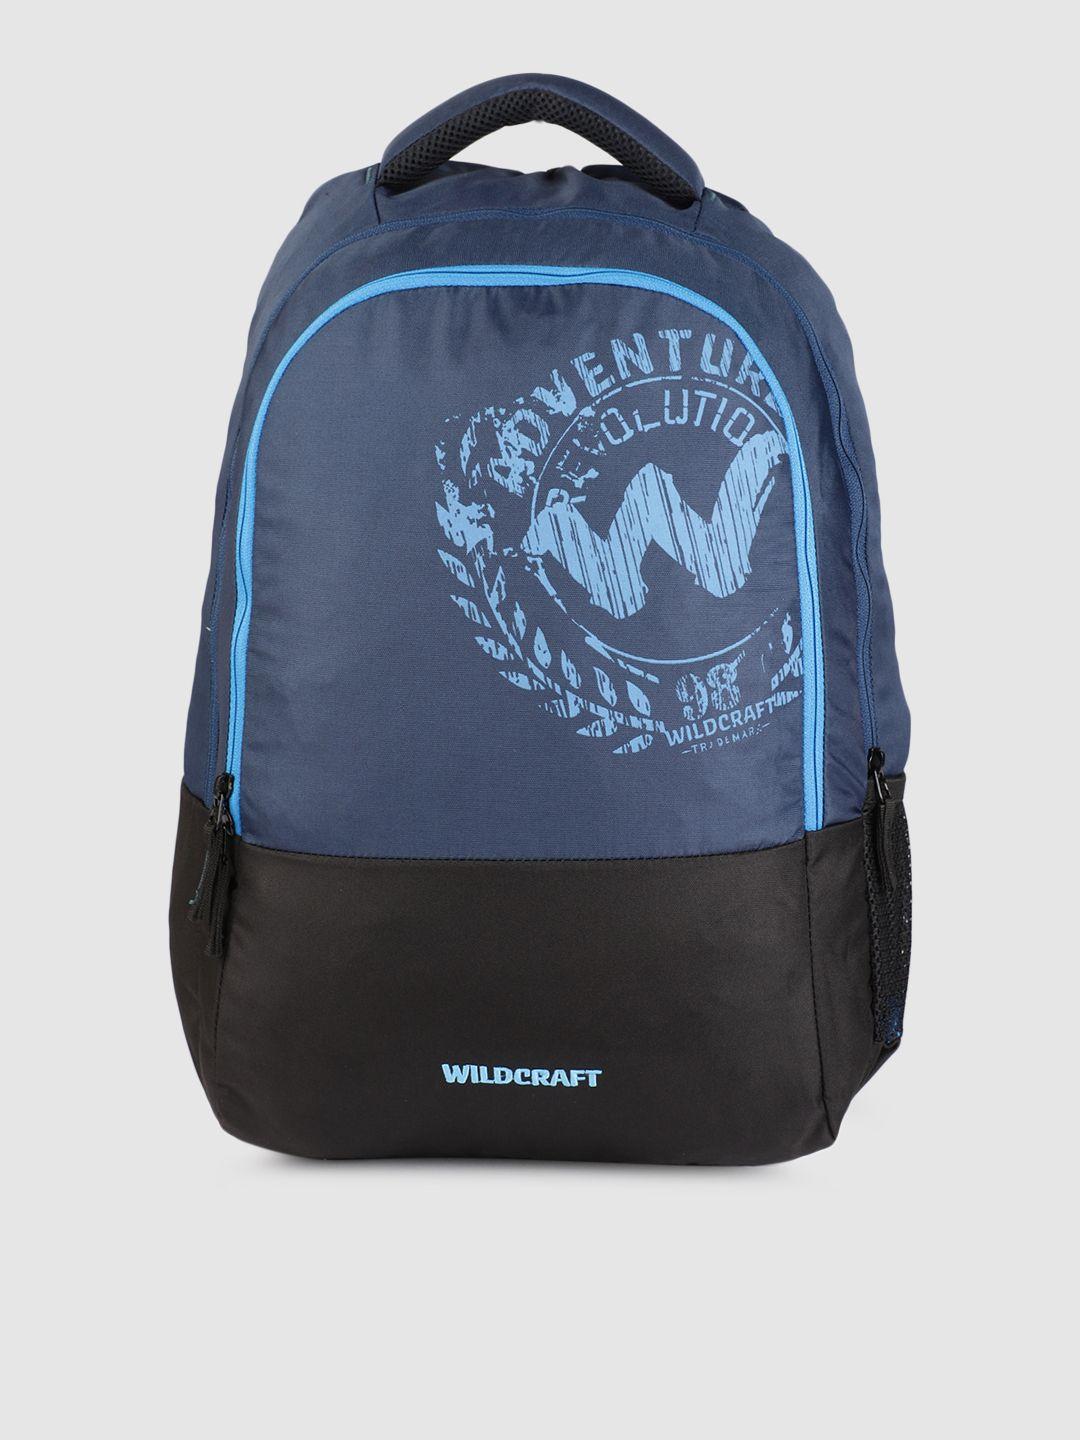 wildcraft-unisex-navy-blue-graphic-spirit-backpack